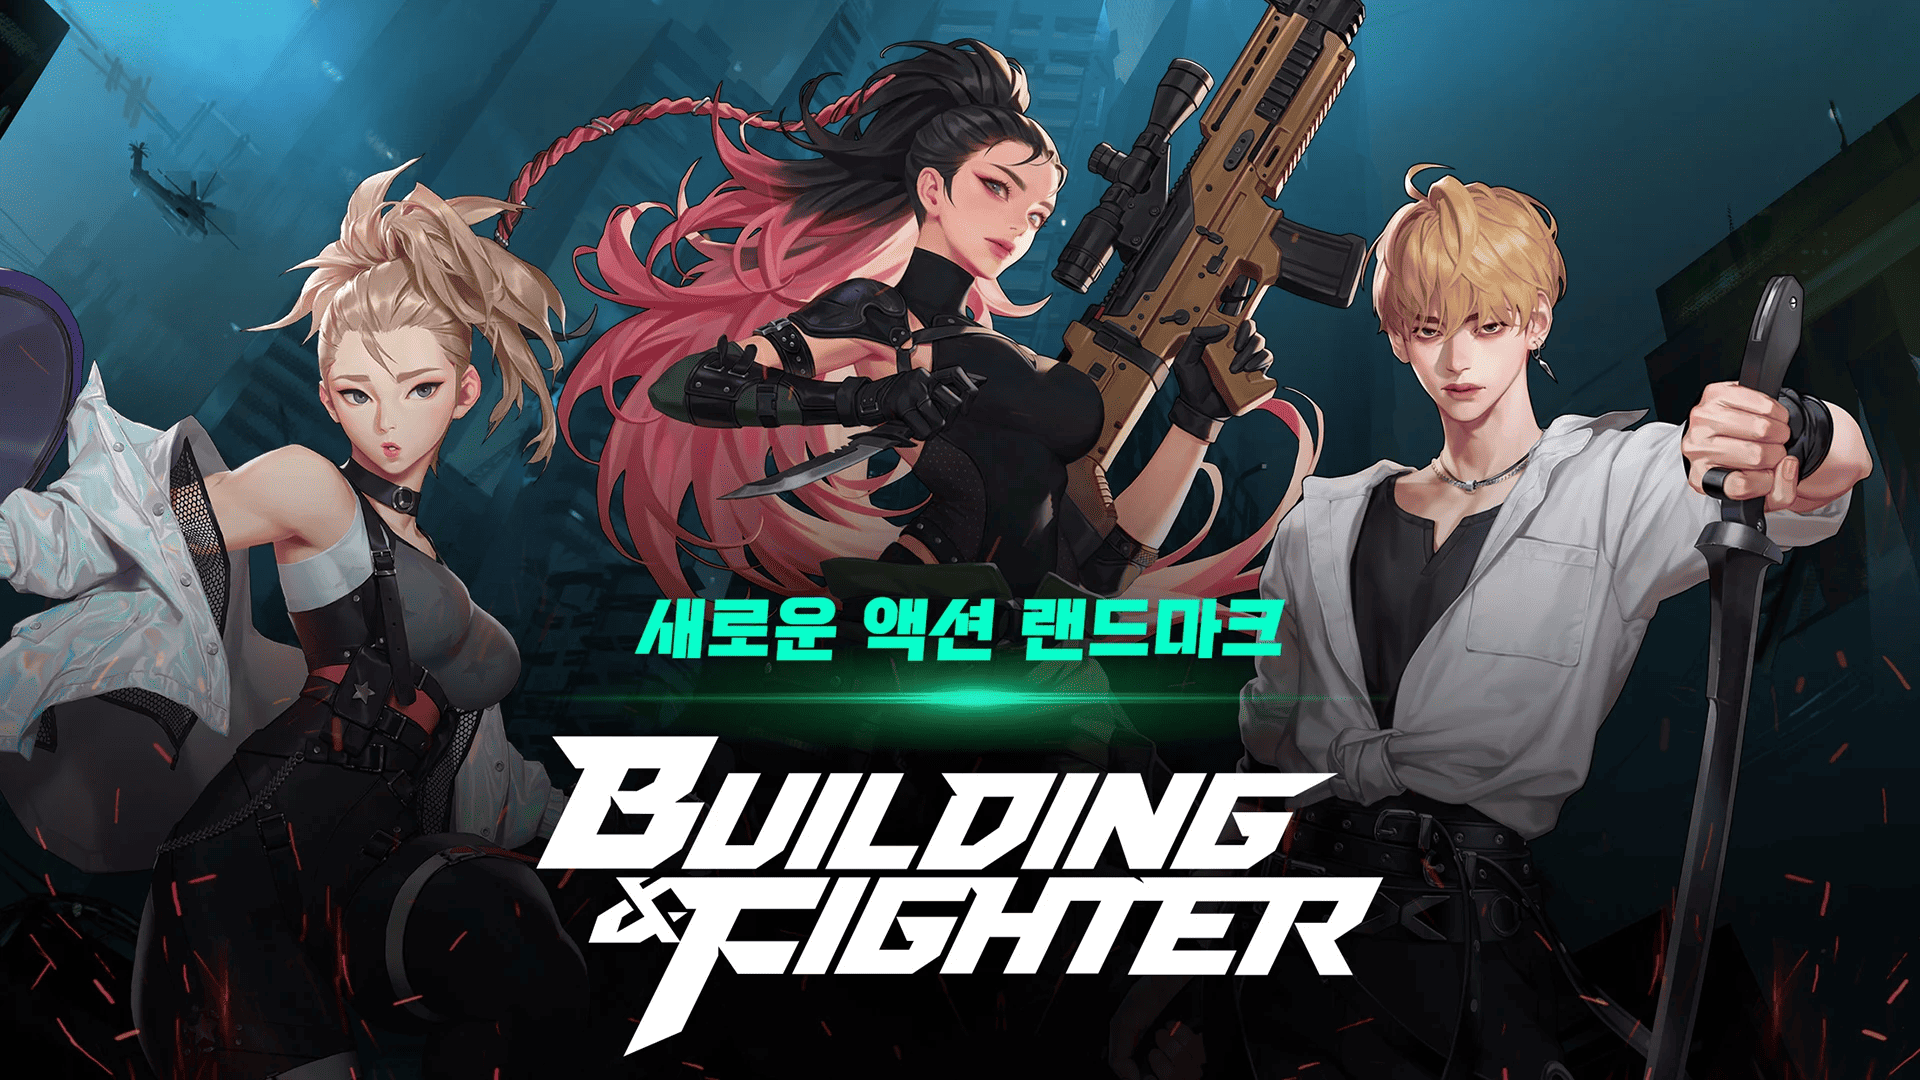 定位技术动作RPG《Building＆Fighter》将在推出六个月后结束营运